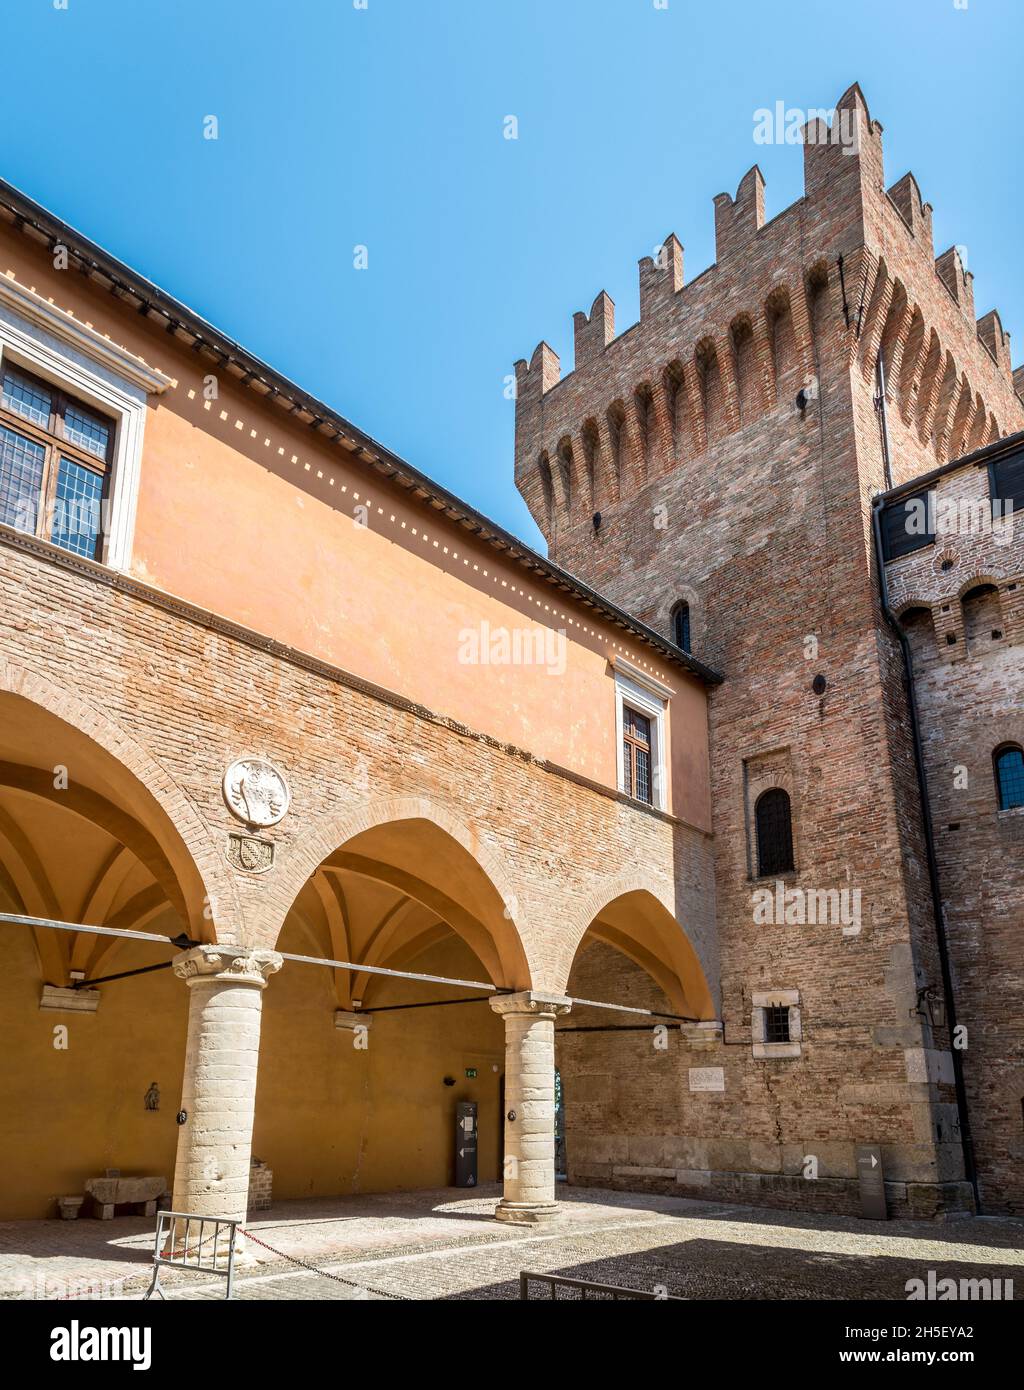 'Rocca' médiéval ou château de la petite ville de Gradara dans la région de Marche, Italie, Europe Banque D'Images